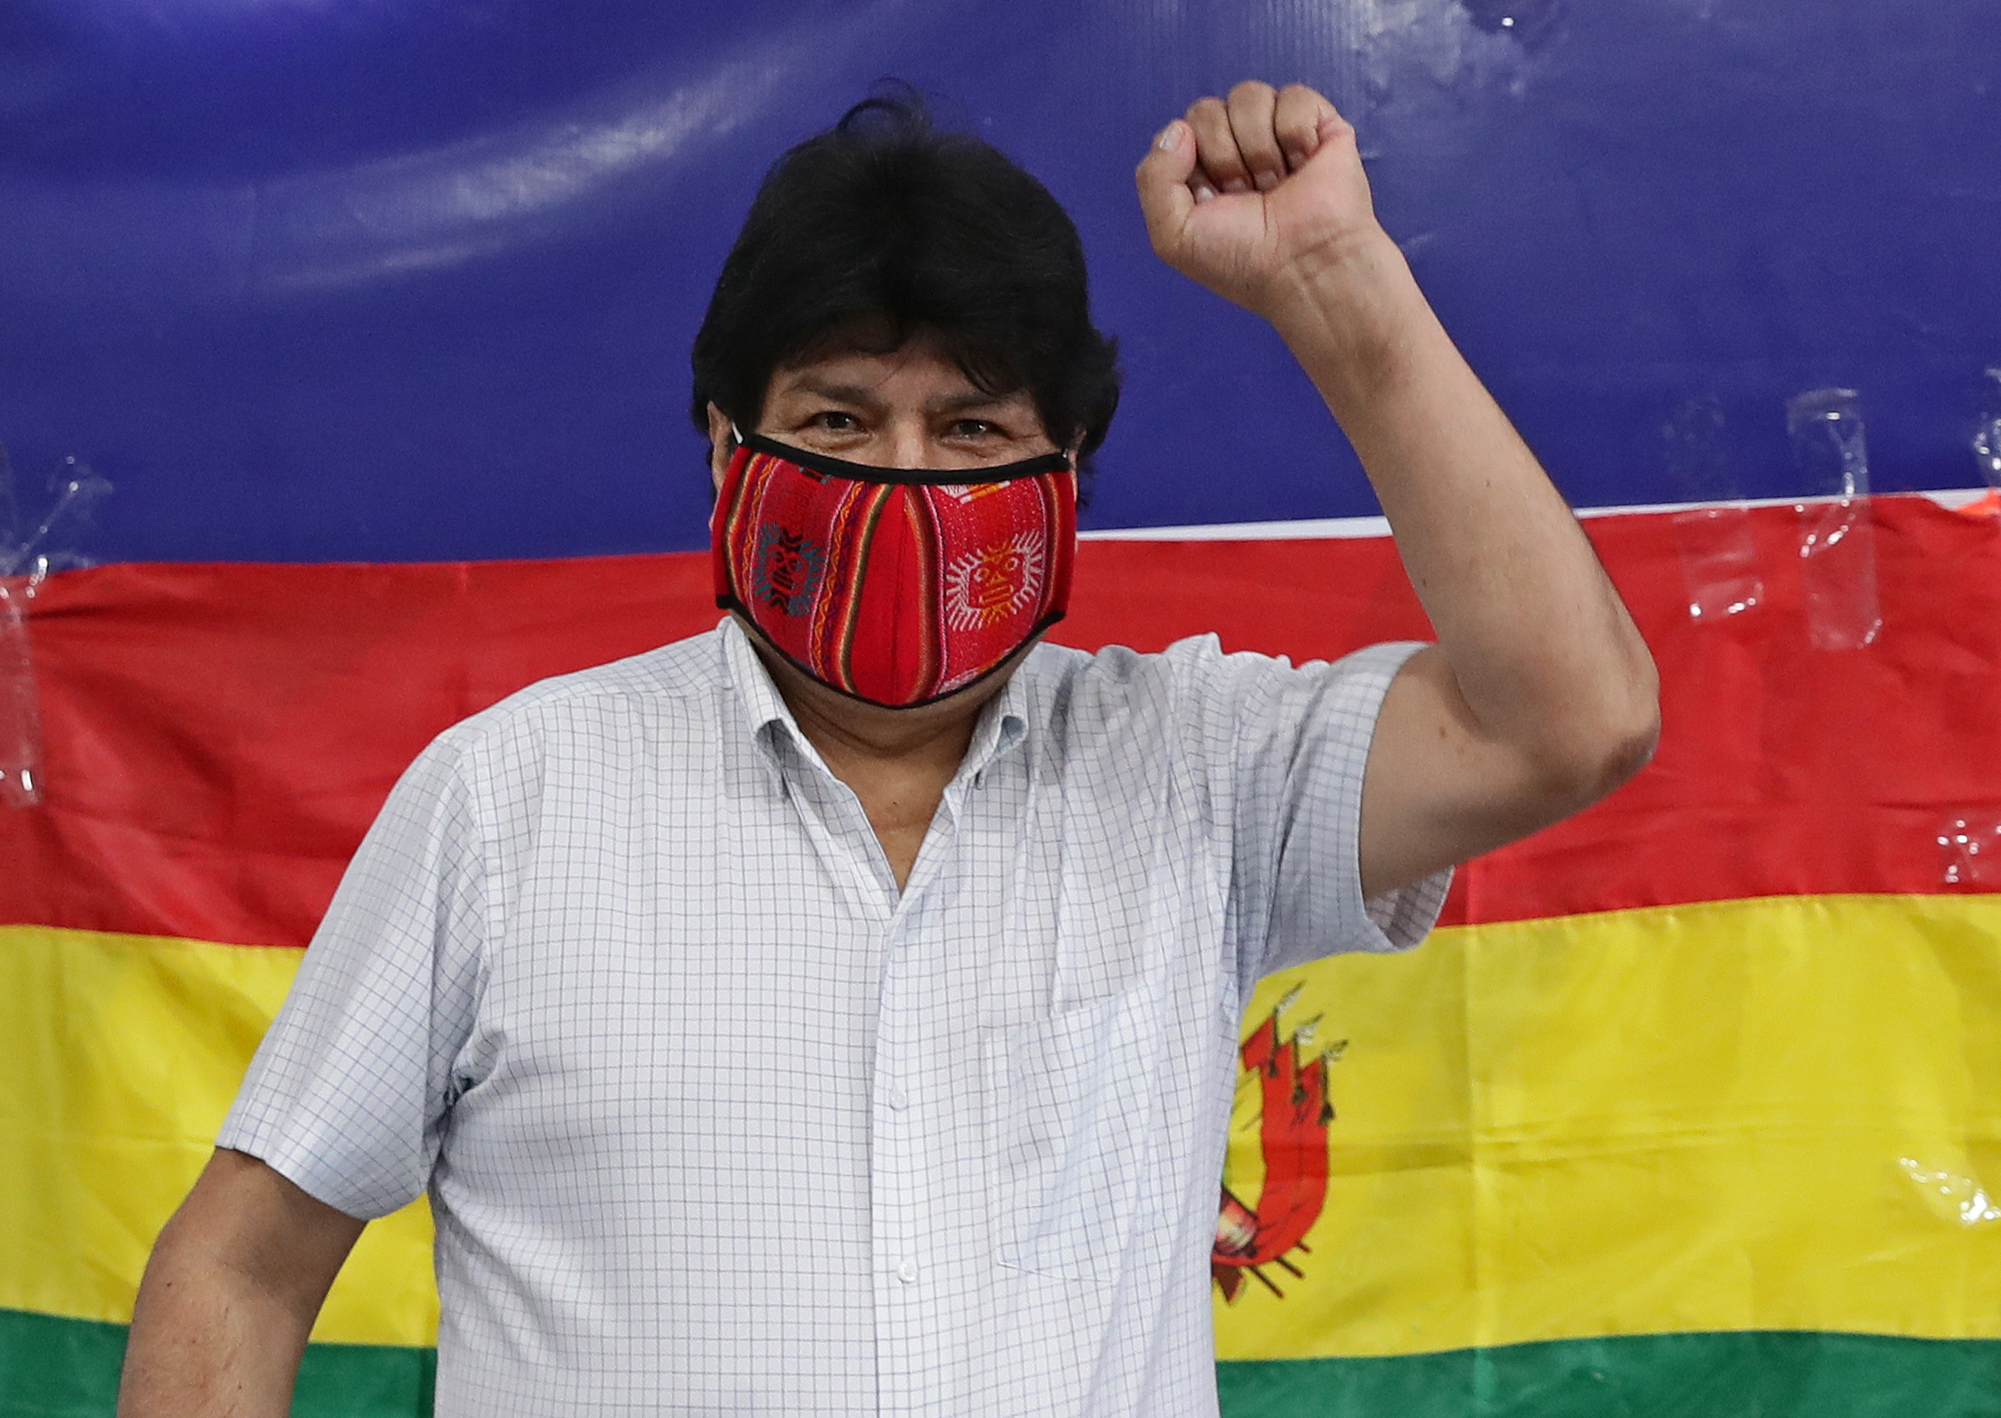 Evo Morales hazatérhet, de nem politikával, hanem haltenyészéssel tervez foglalkozni